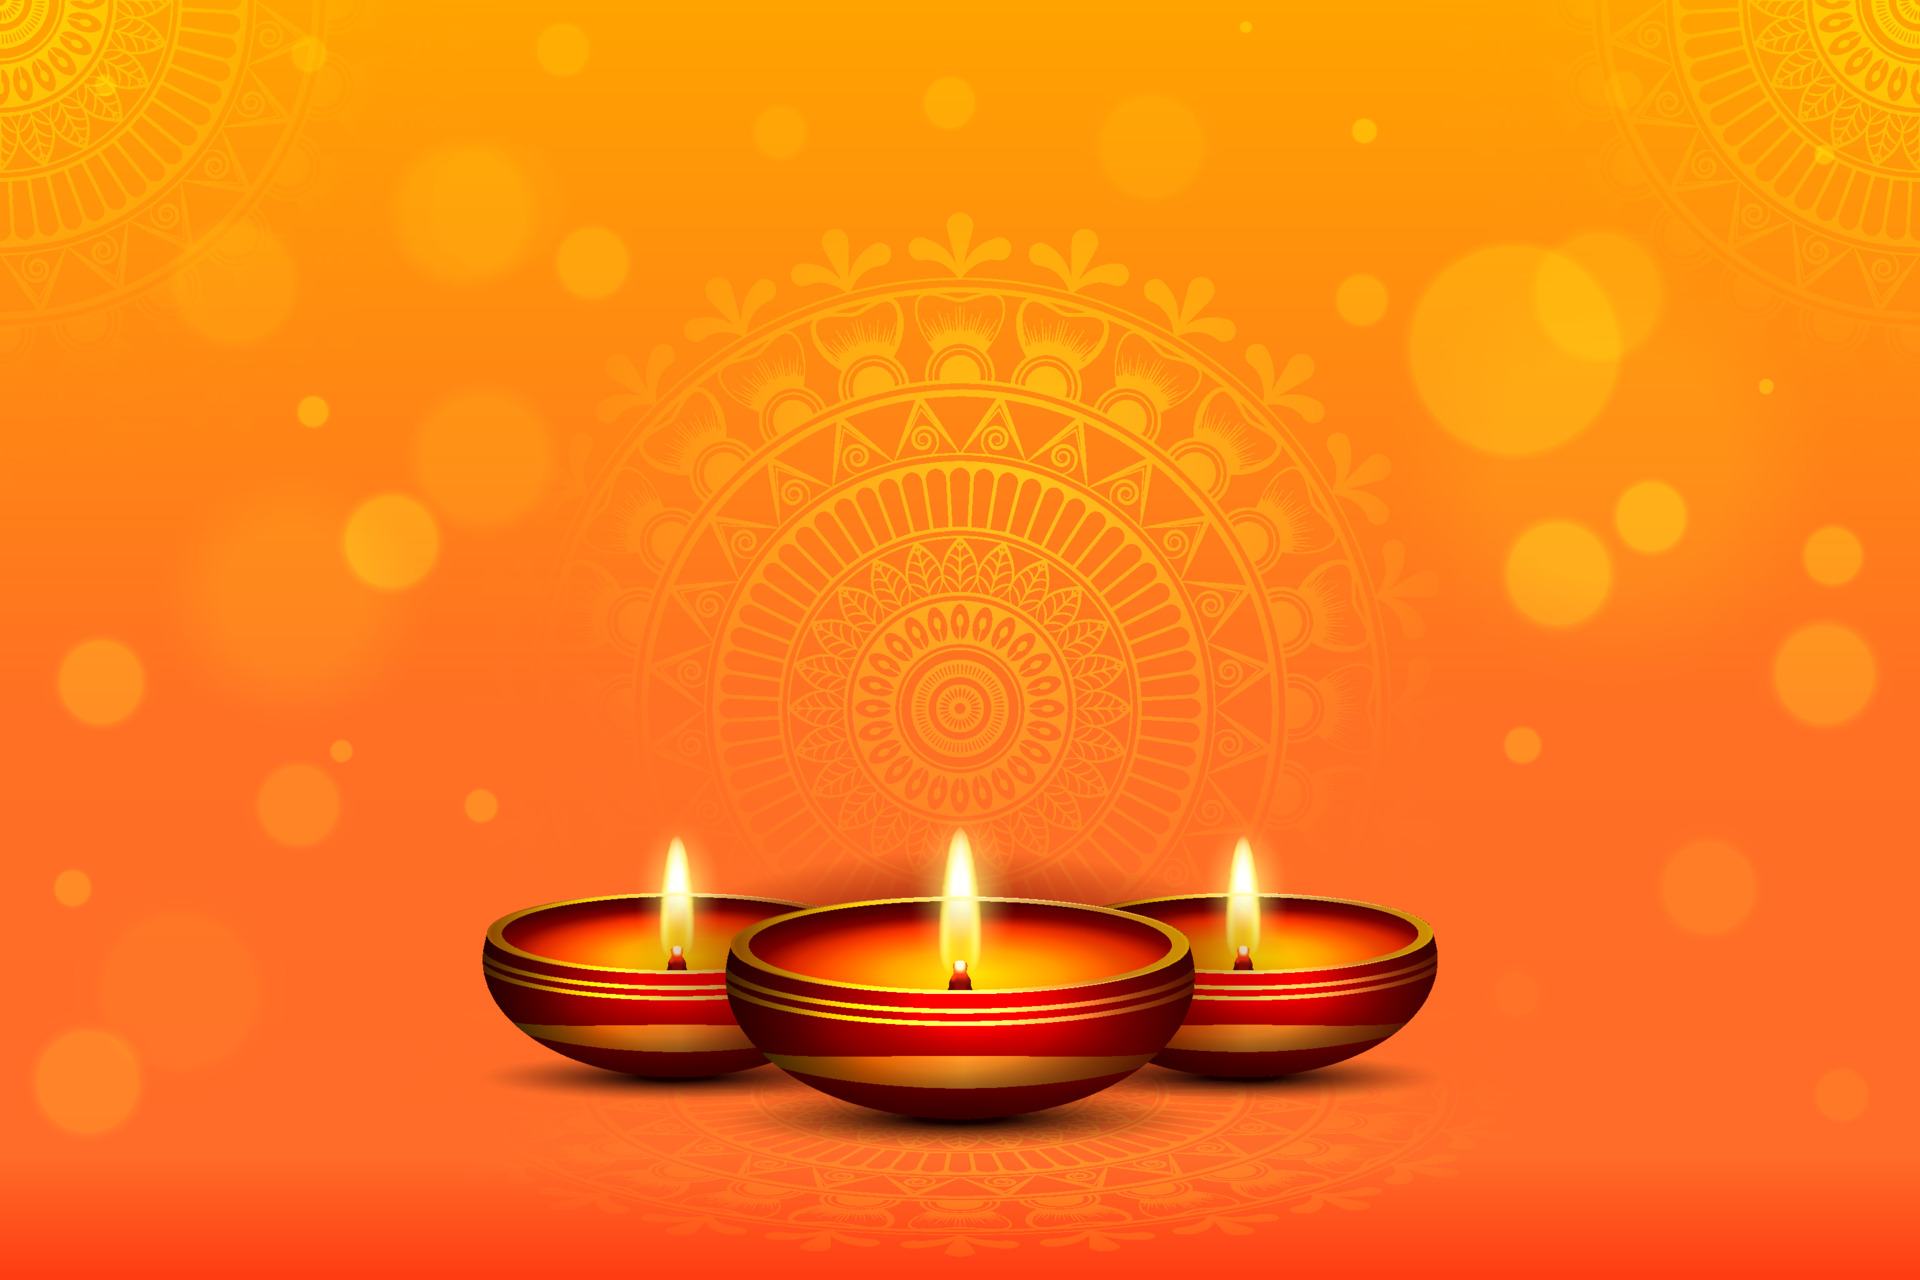 Tham gia nền tảng lễ hội Diwali vui vẻ, bạn sẽ được thưởng thức những màn trình diễn ánh sáng đầy thực tế với đèn dầu và cùng chúc mừng lễ Diwali.